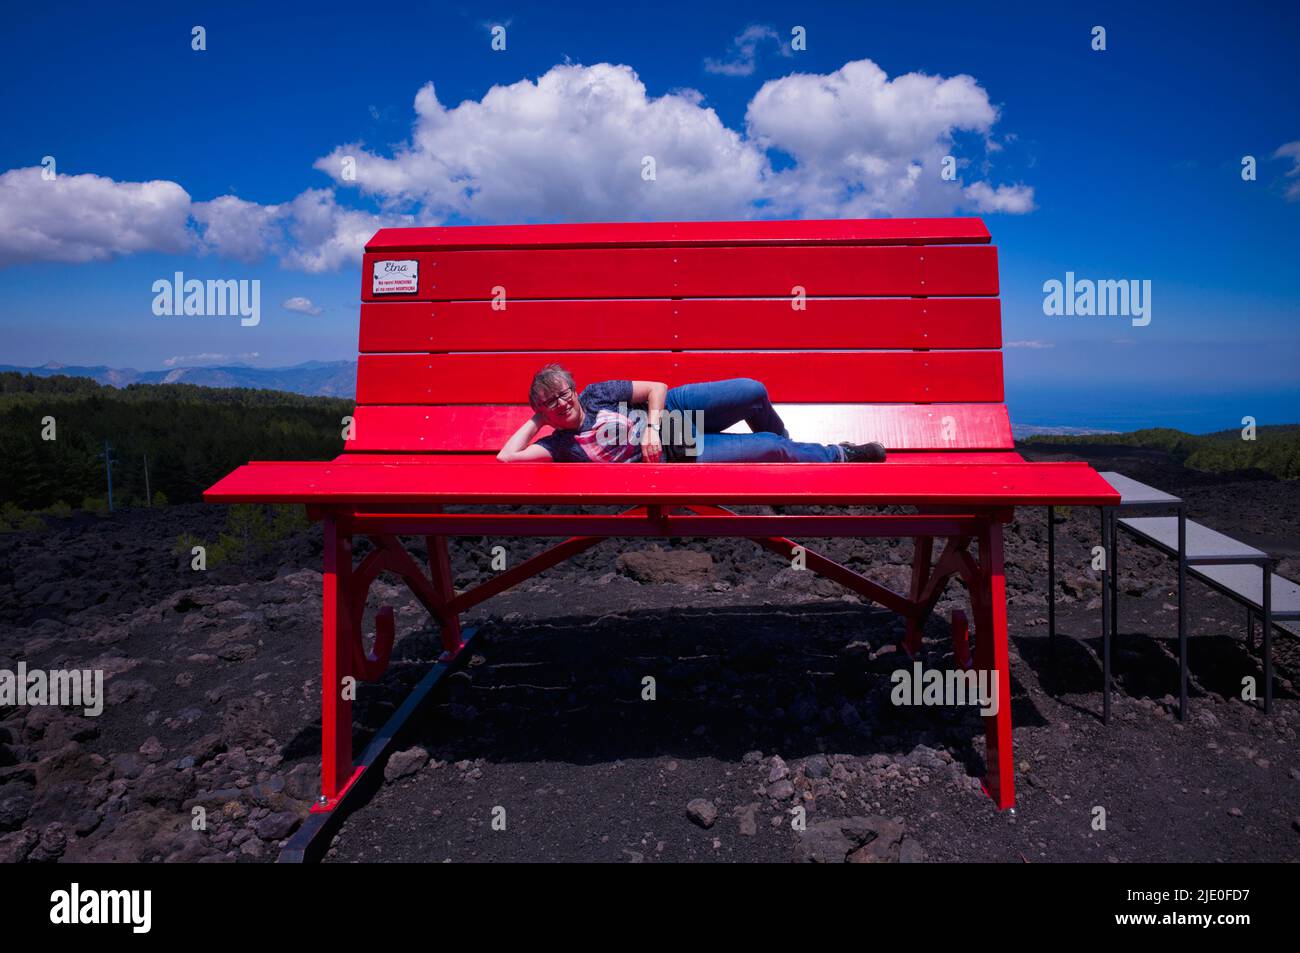 Femme âgée couchée sur un immense banc rouge, projet communautaire du grand banc, grand banc numéro 200, Etna, Grande Panchina, Linguaglossa, Sicile, Italie Banque D'Images